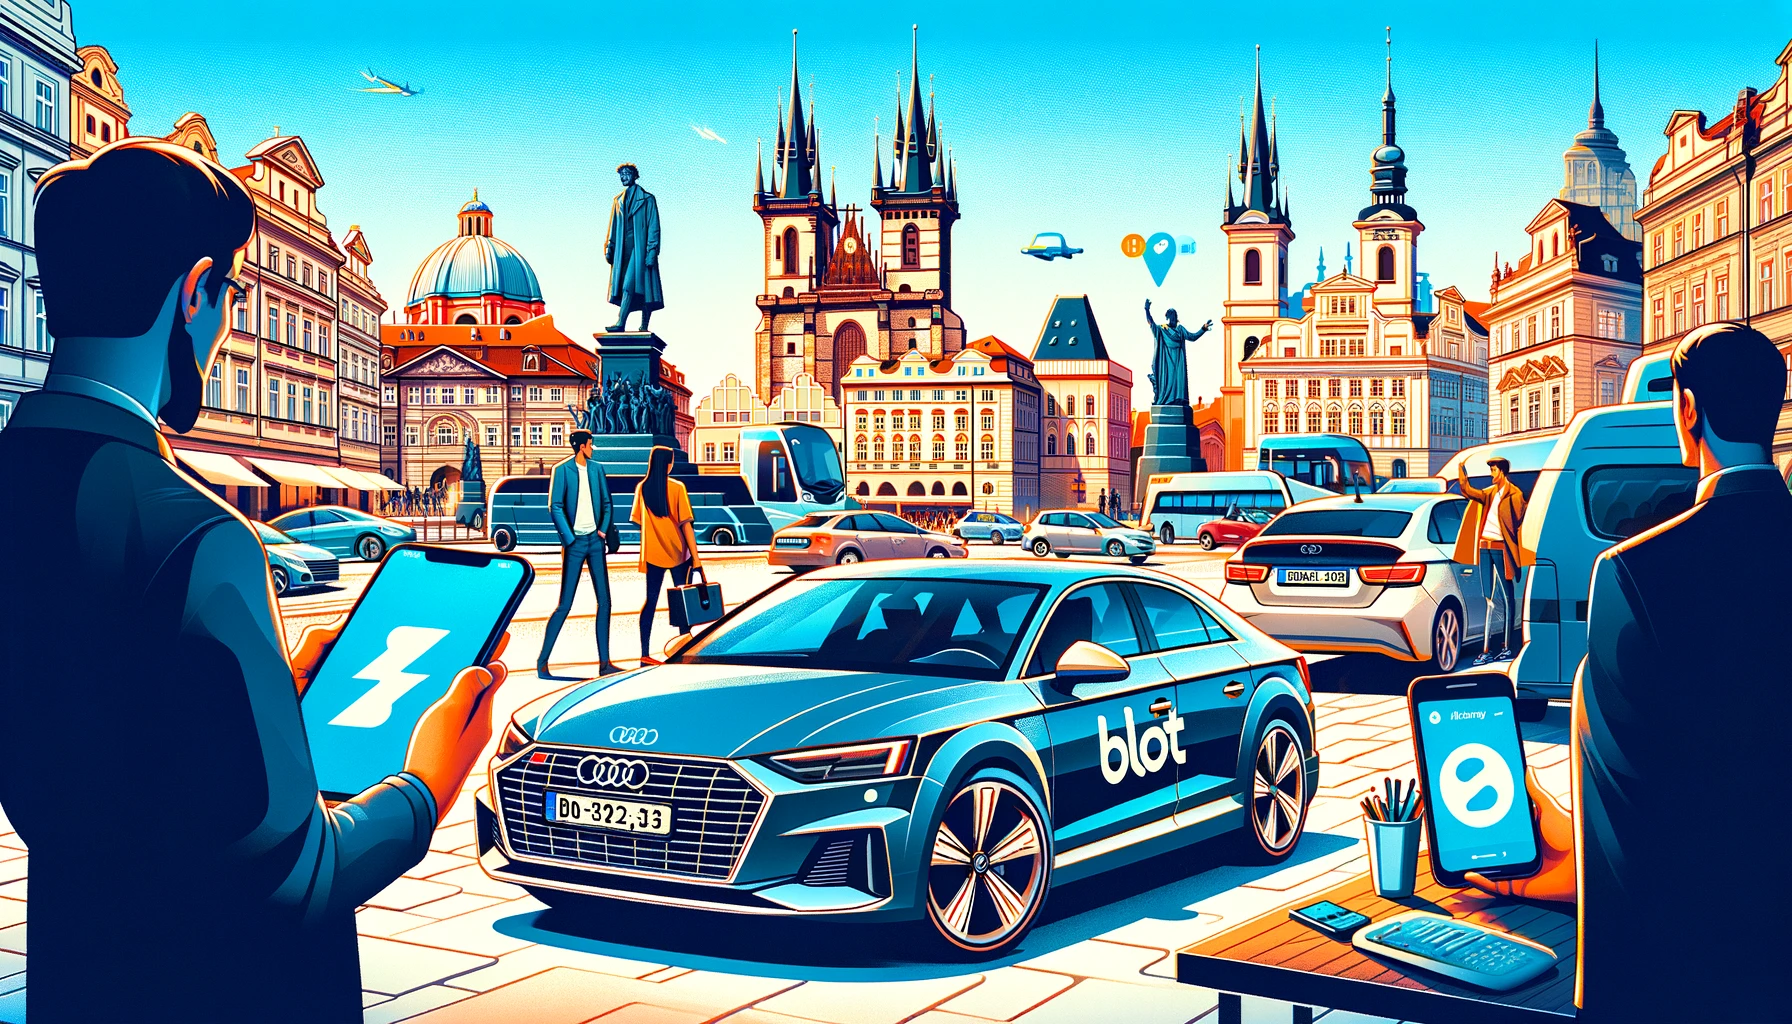 Bolt spouští novou službu carsharingu v Praze: Nabídne 400 vozidel